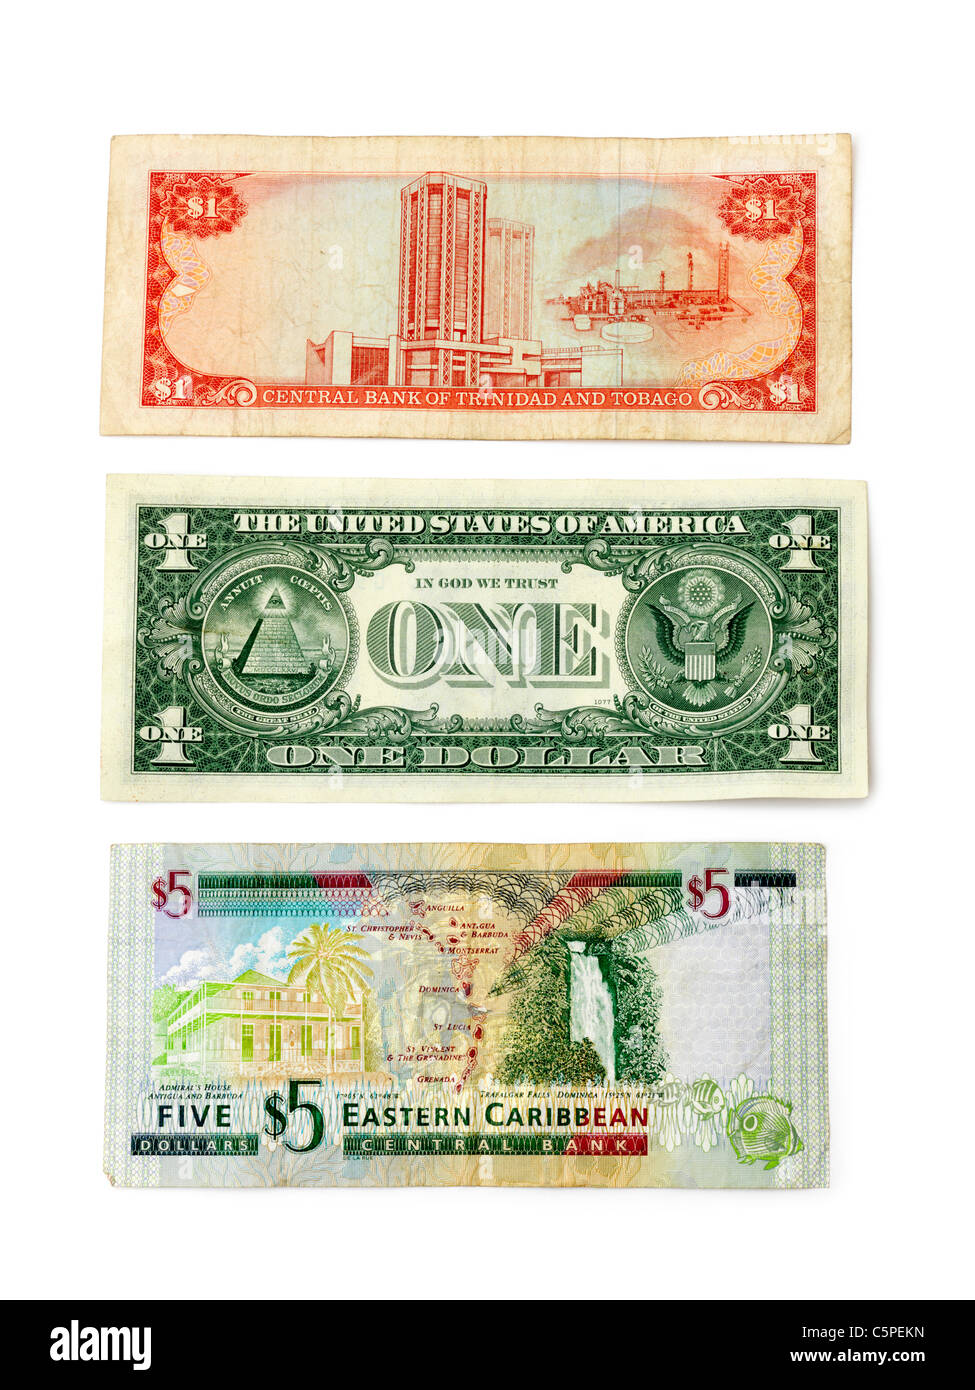 Un orientale Caraibi $5 nota, una banca centrale di Trinidad e Tobago $1 nota e gli Stati Uniti d'America $1 nota Foto Stock